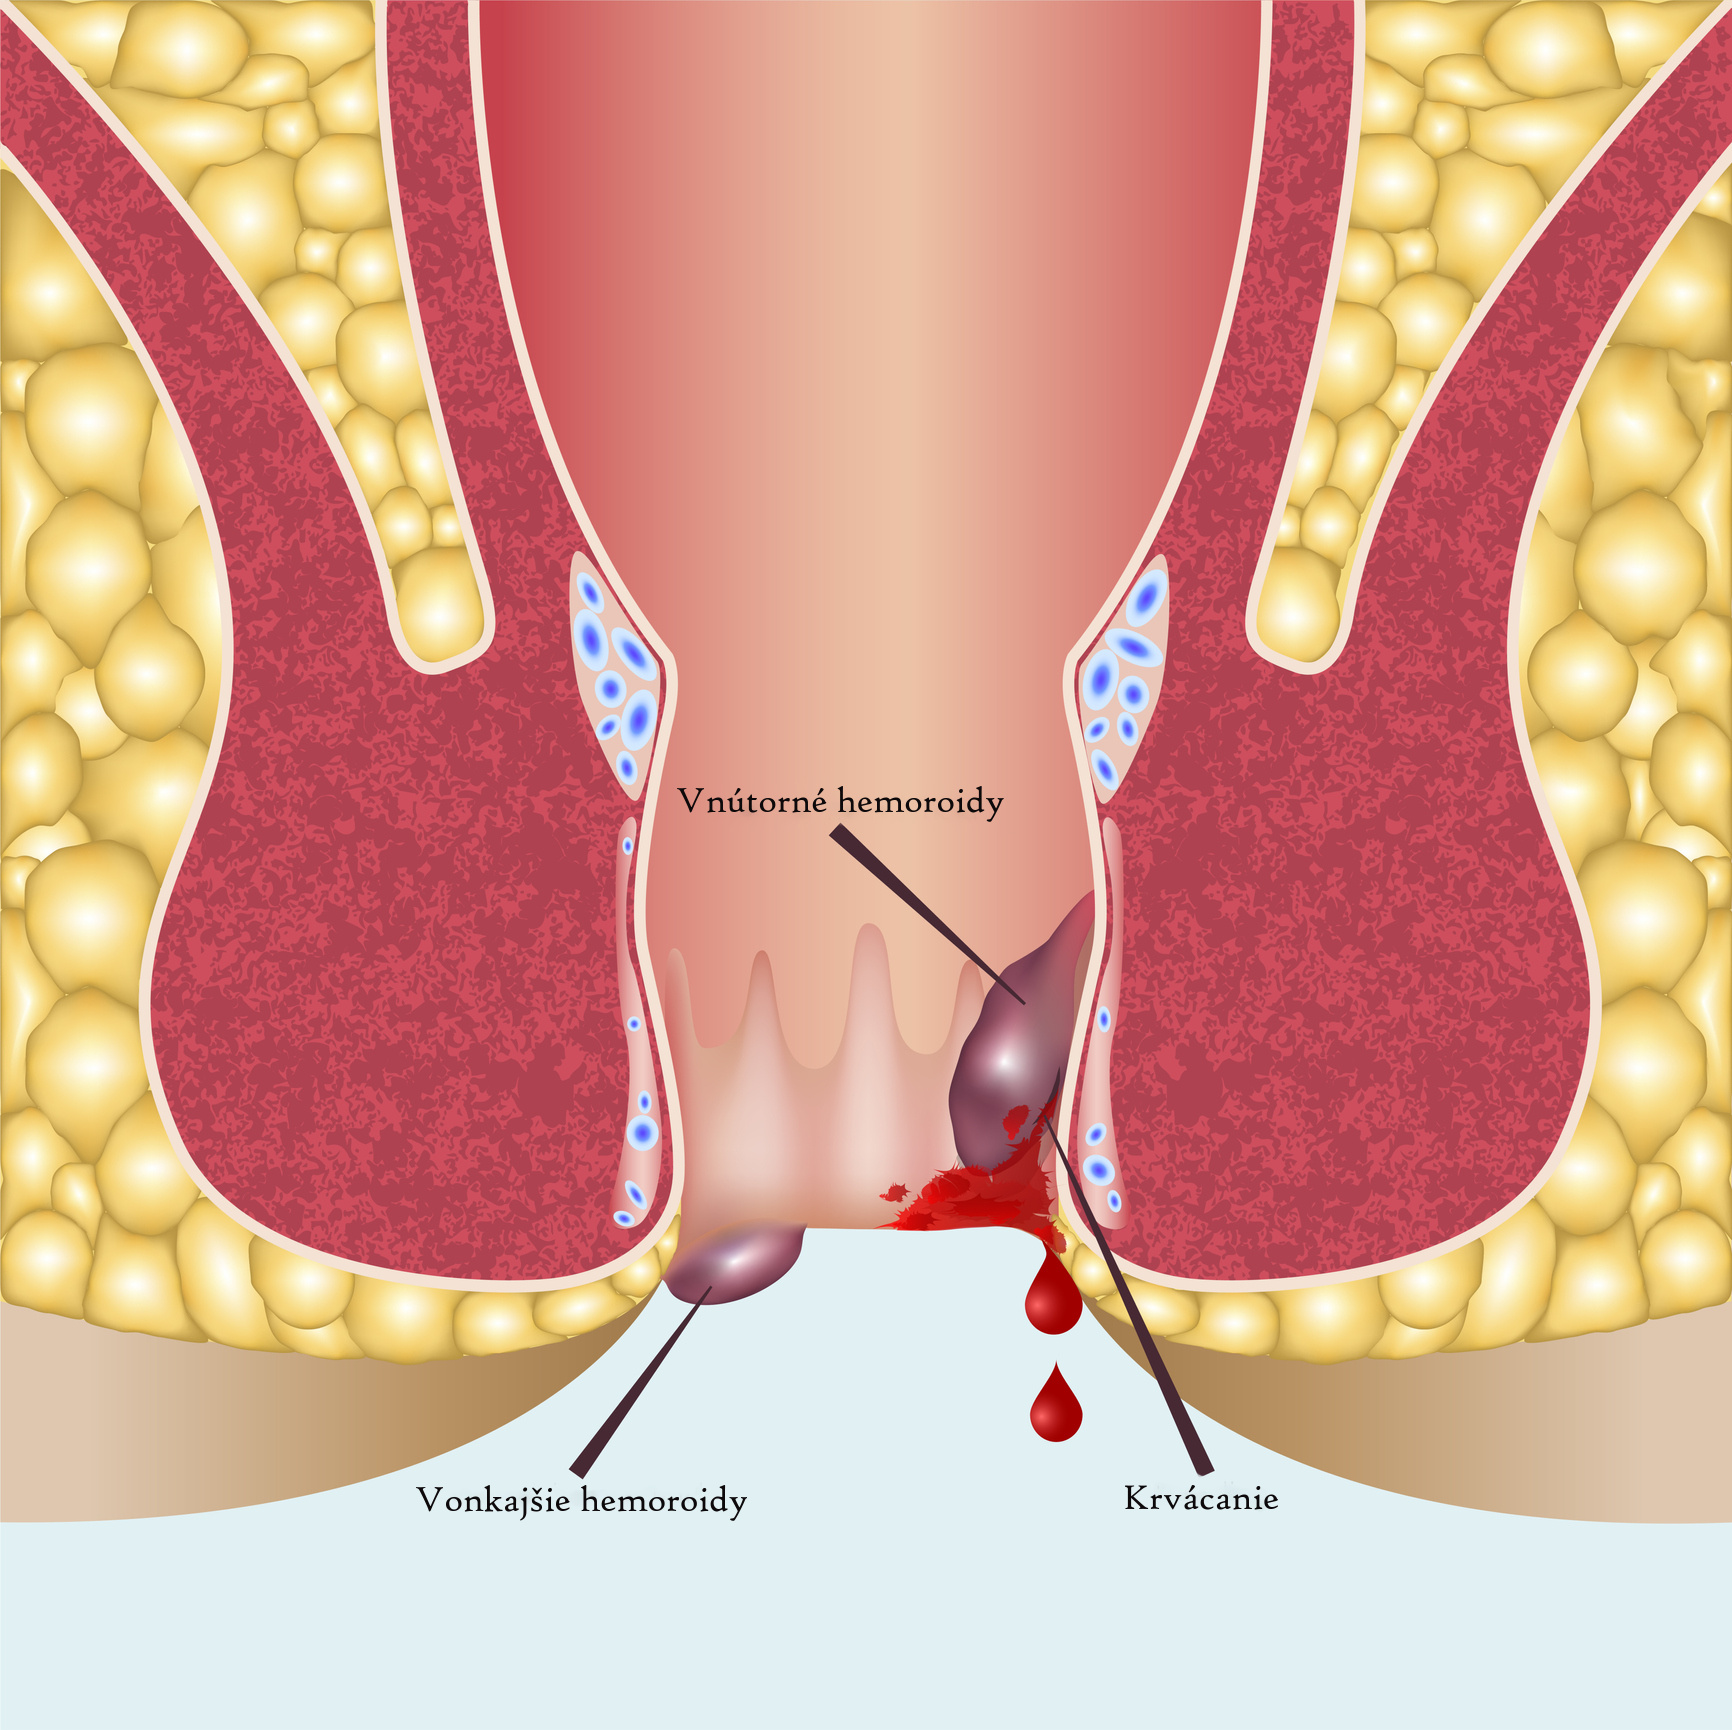 Anatomické zobrazenie rozdielu vnútorných a vonkajších hemoroidov + krvácanie